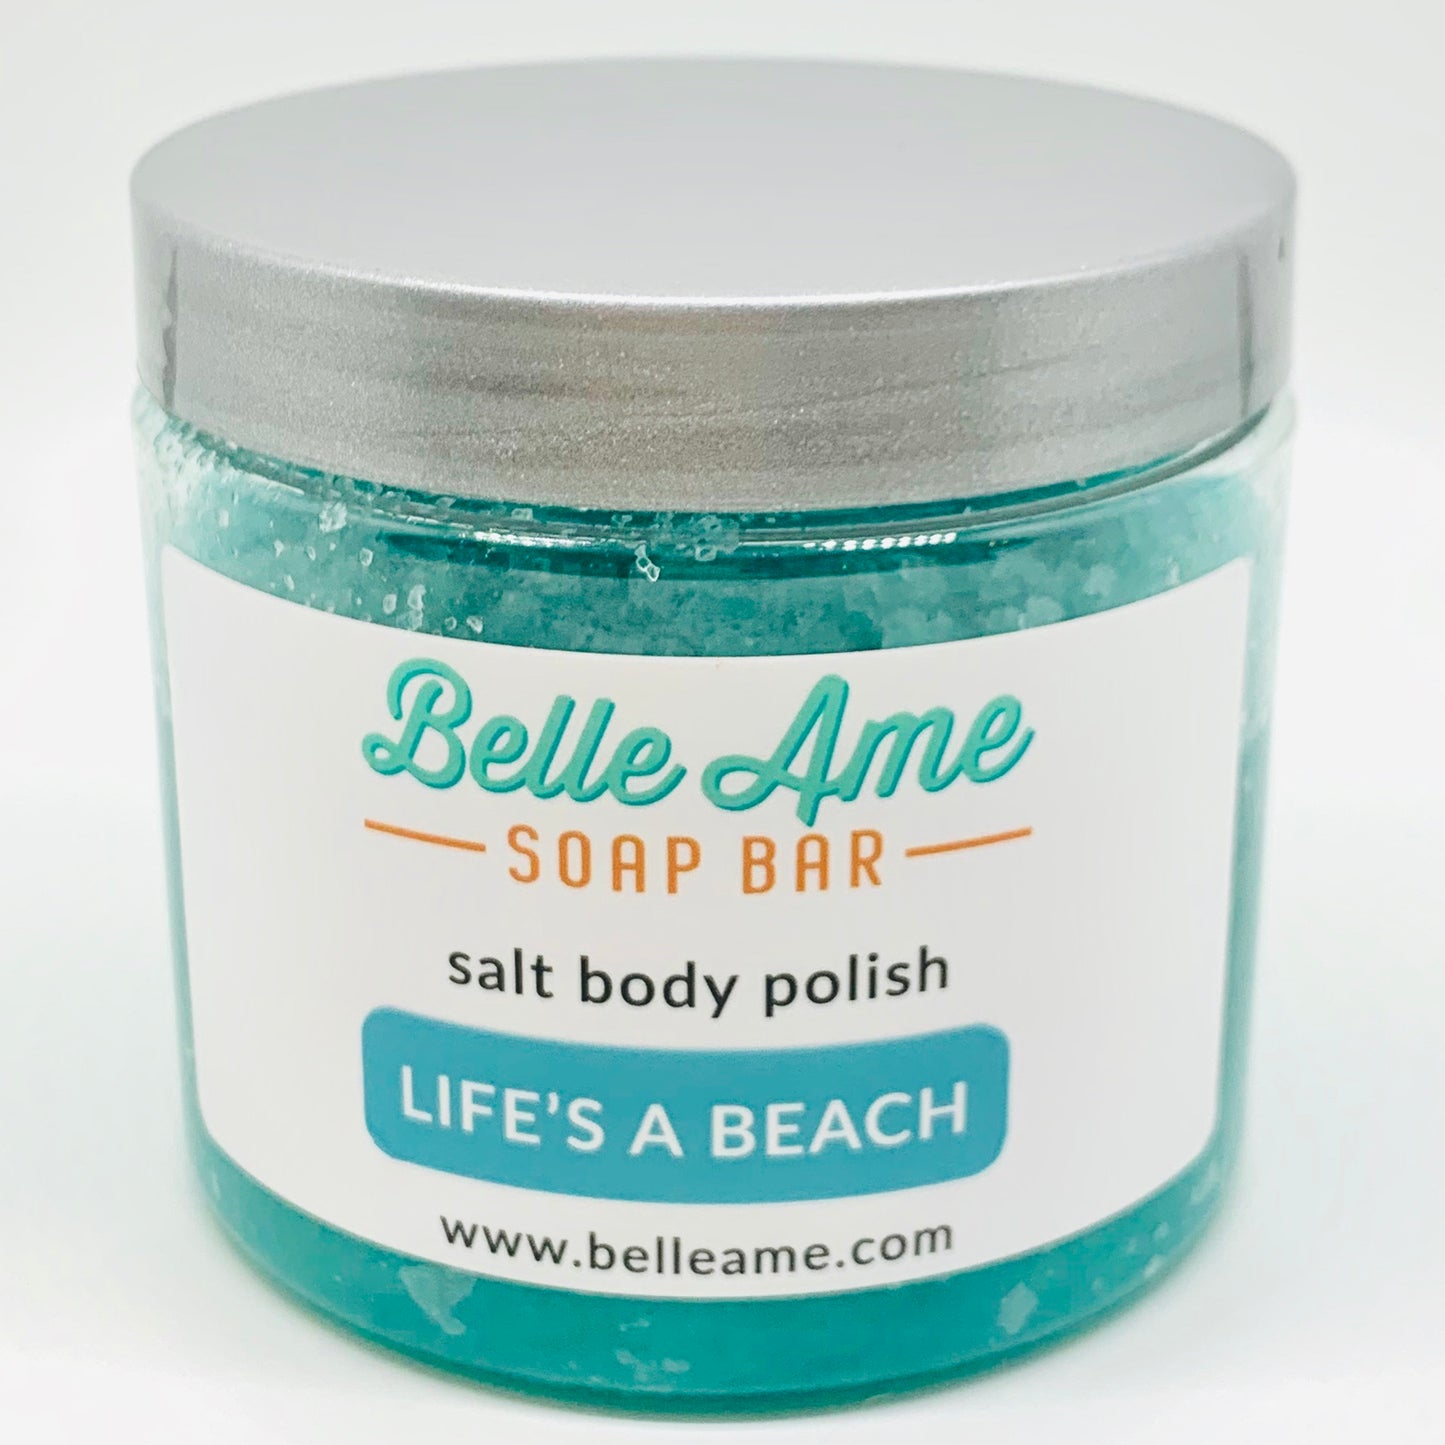 Life's a Beach Salt Body Polish